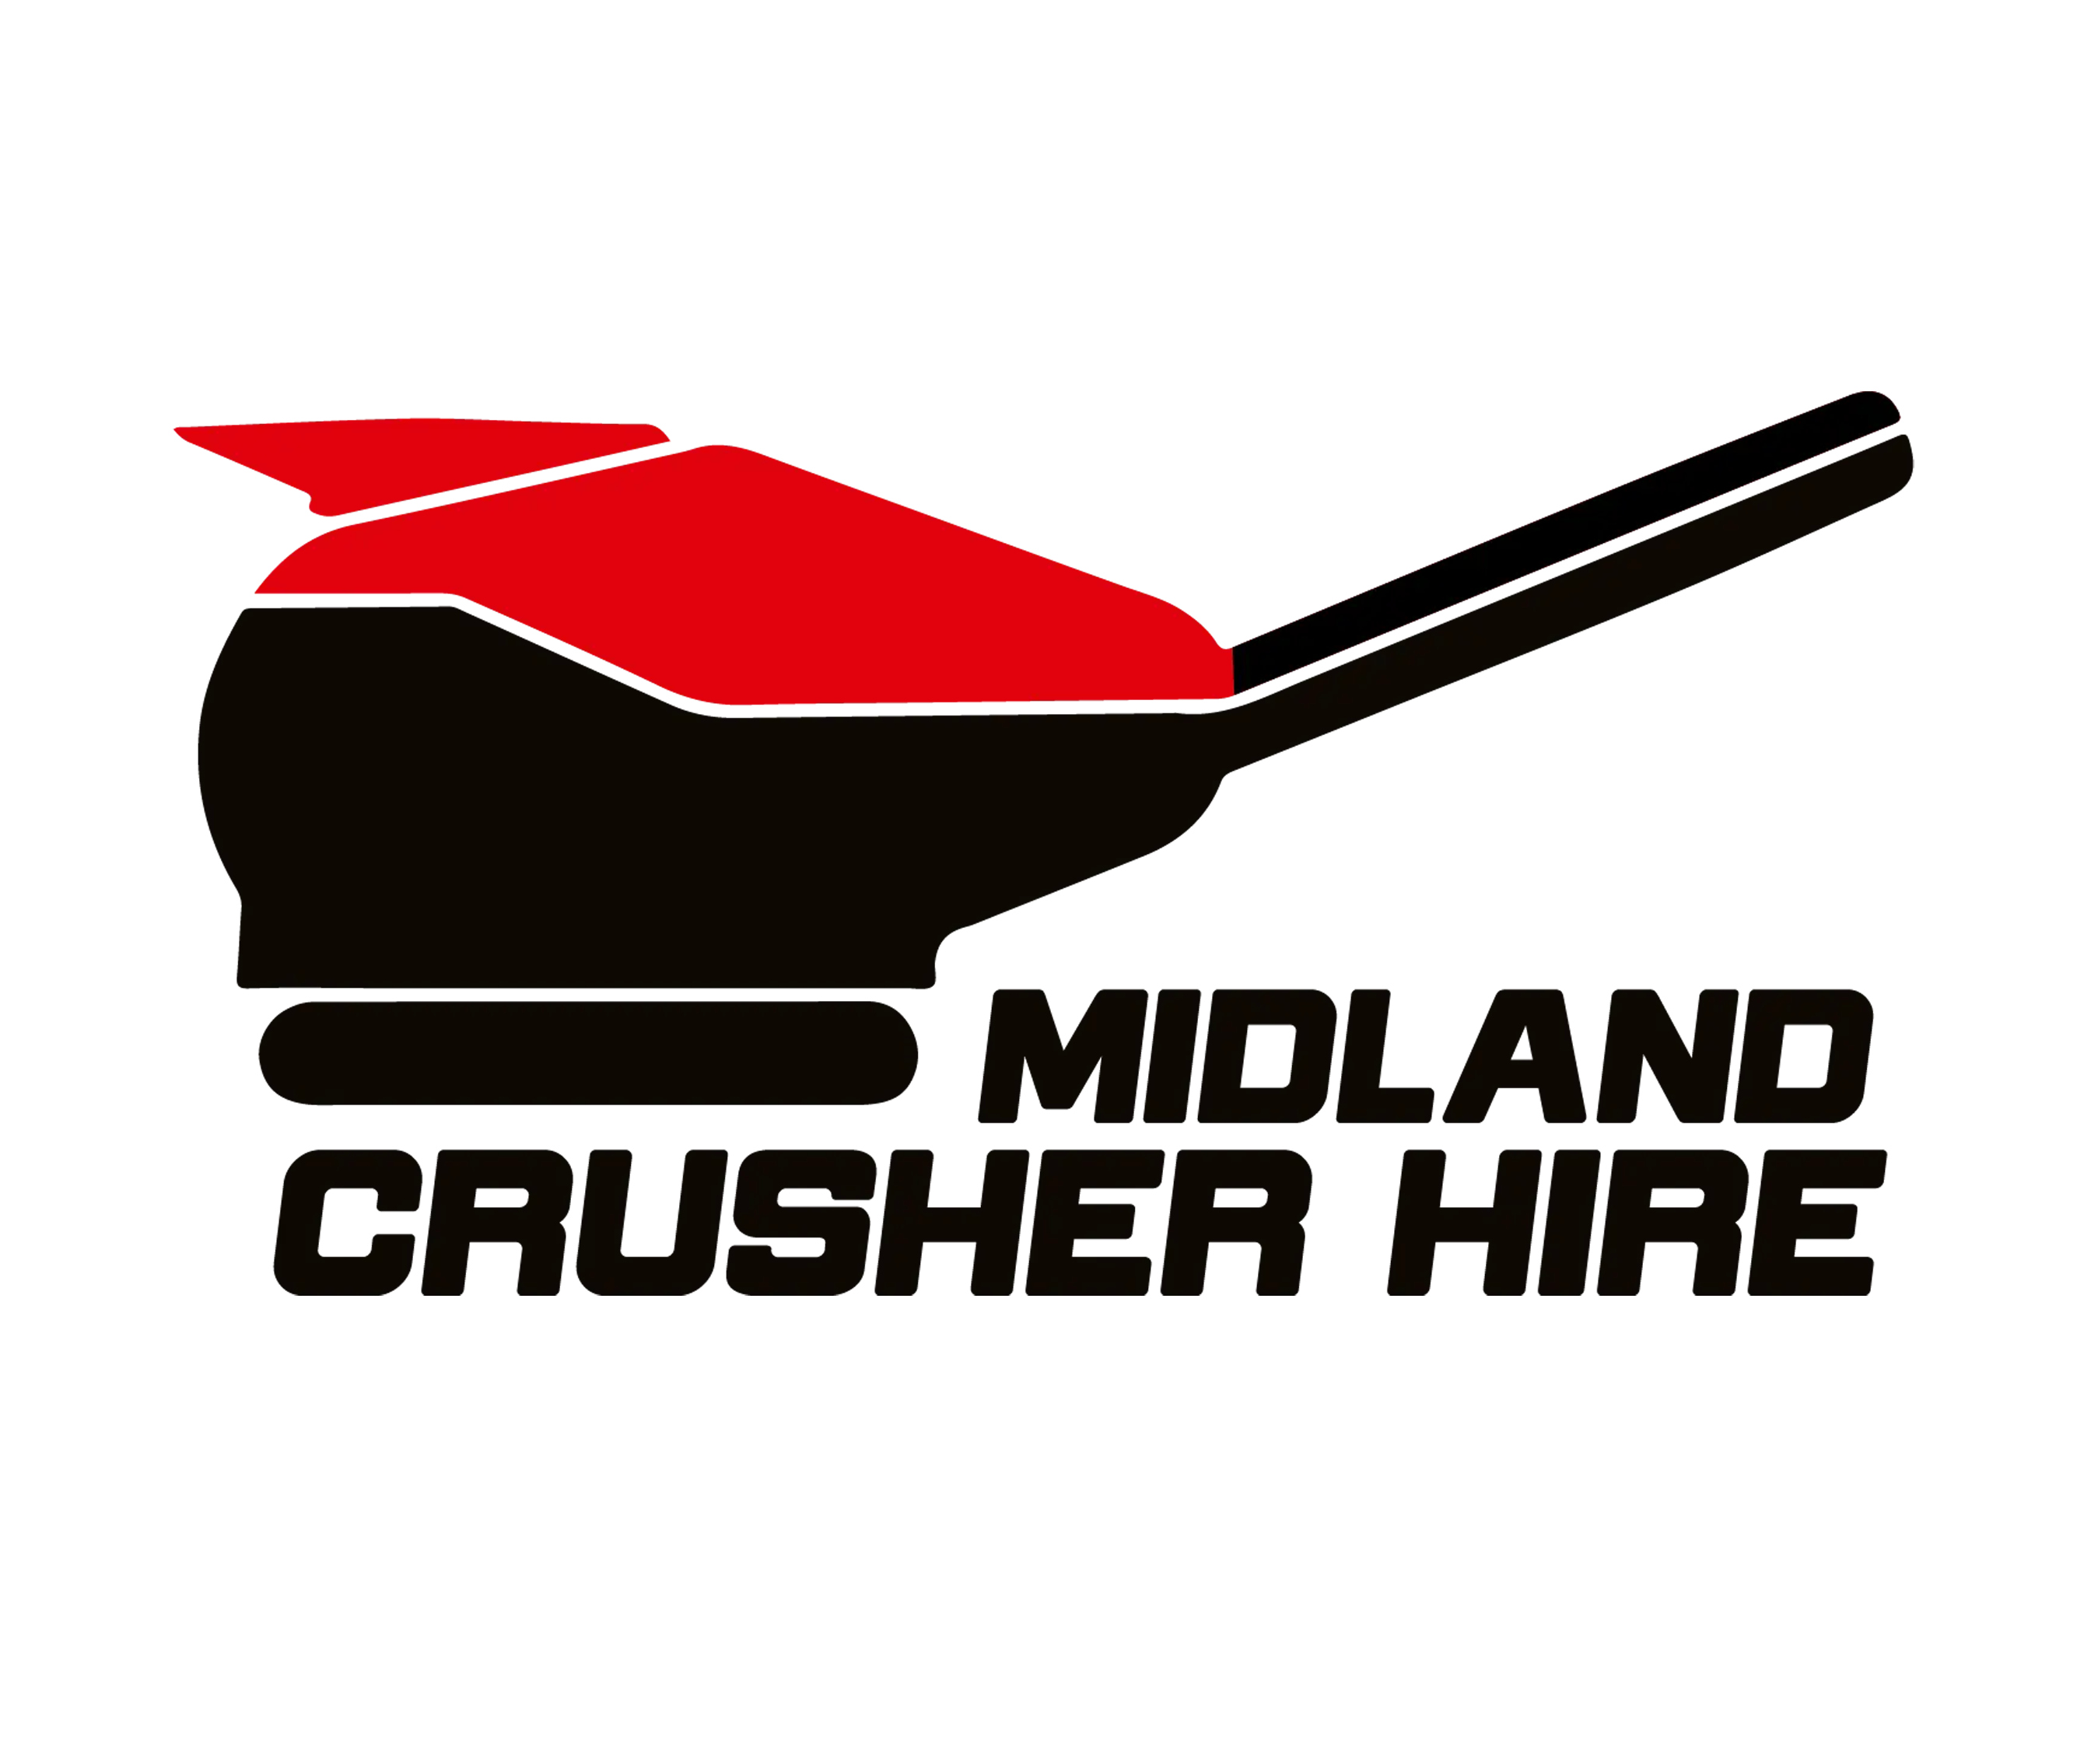 Midland Crusher Hire